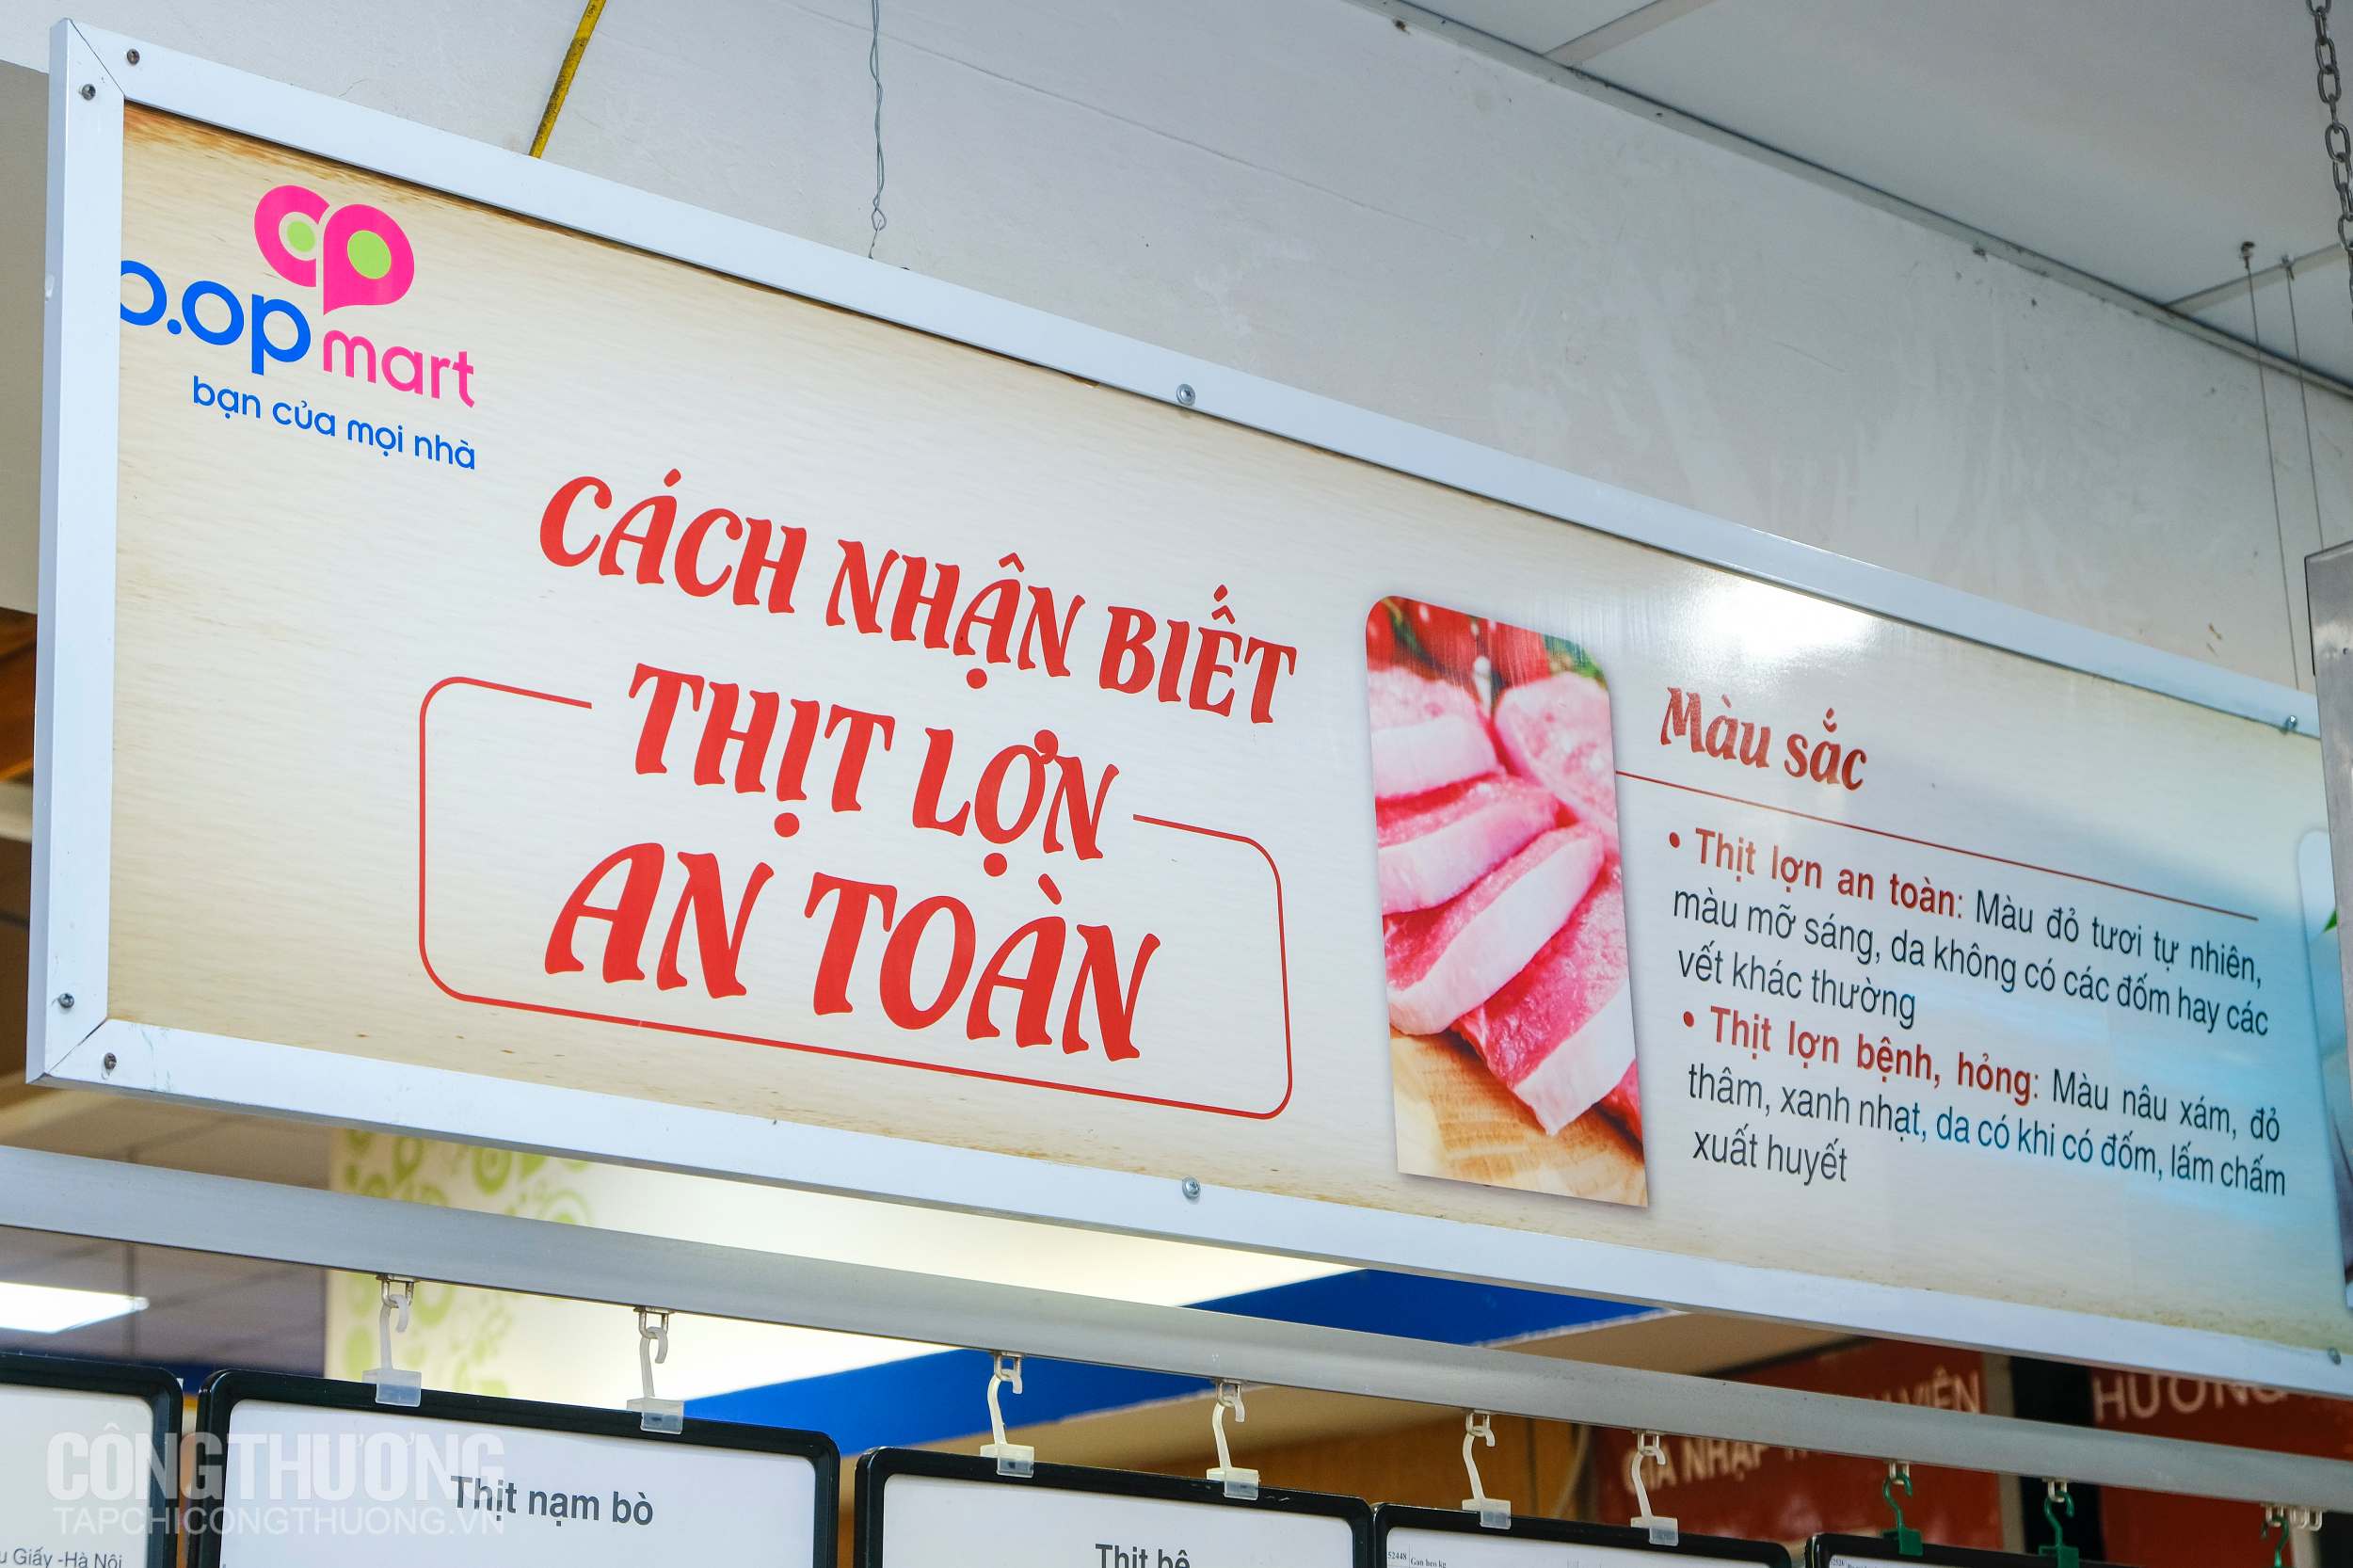 Thịt lợn tại hệ thống của Saigon Co.op đặc biệt chú trọng về vấn đề nguồn gốc xuất xứ và vấn đề an toàn thực phẩm